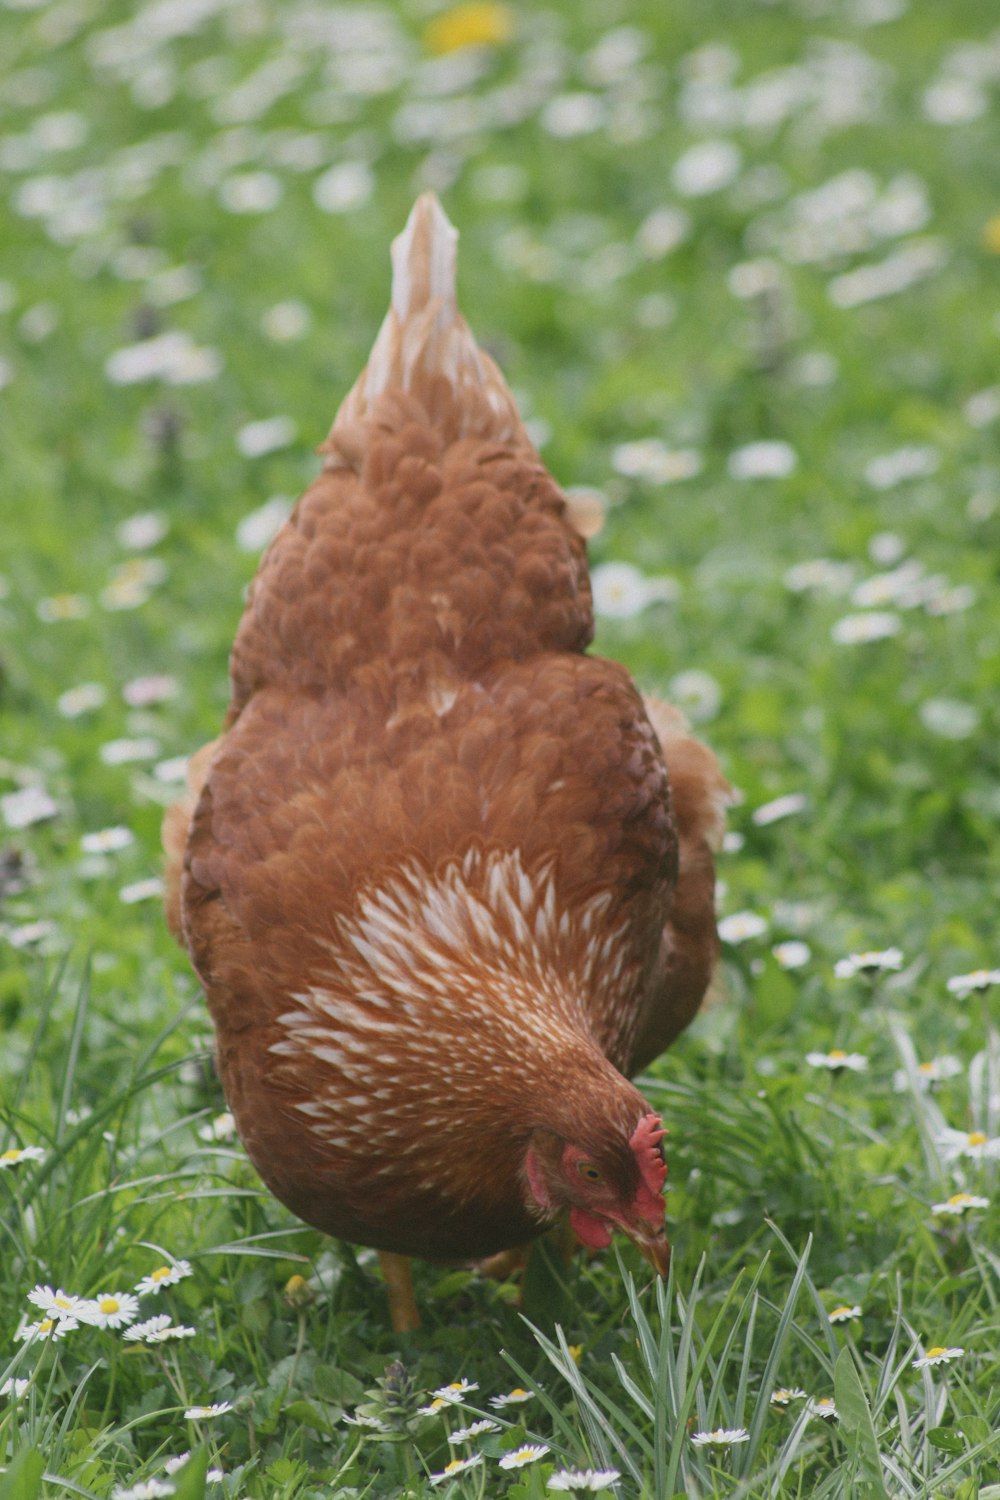 brown chicken on green grass during daytime